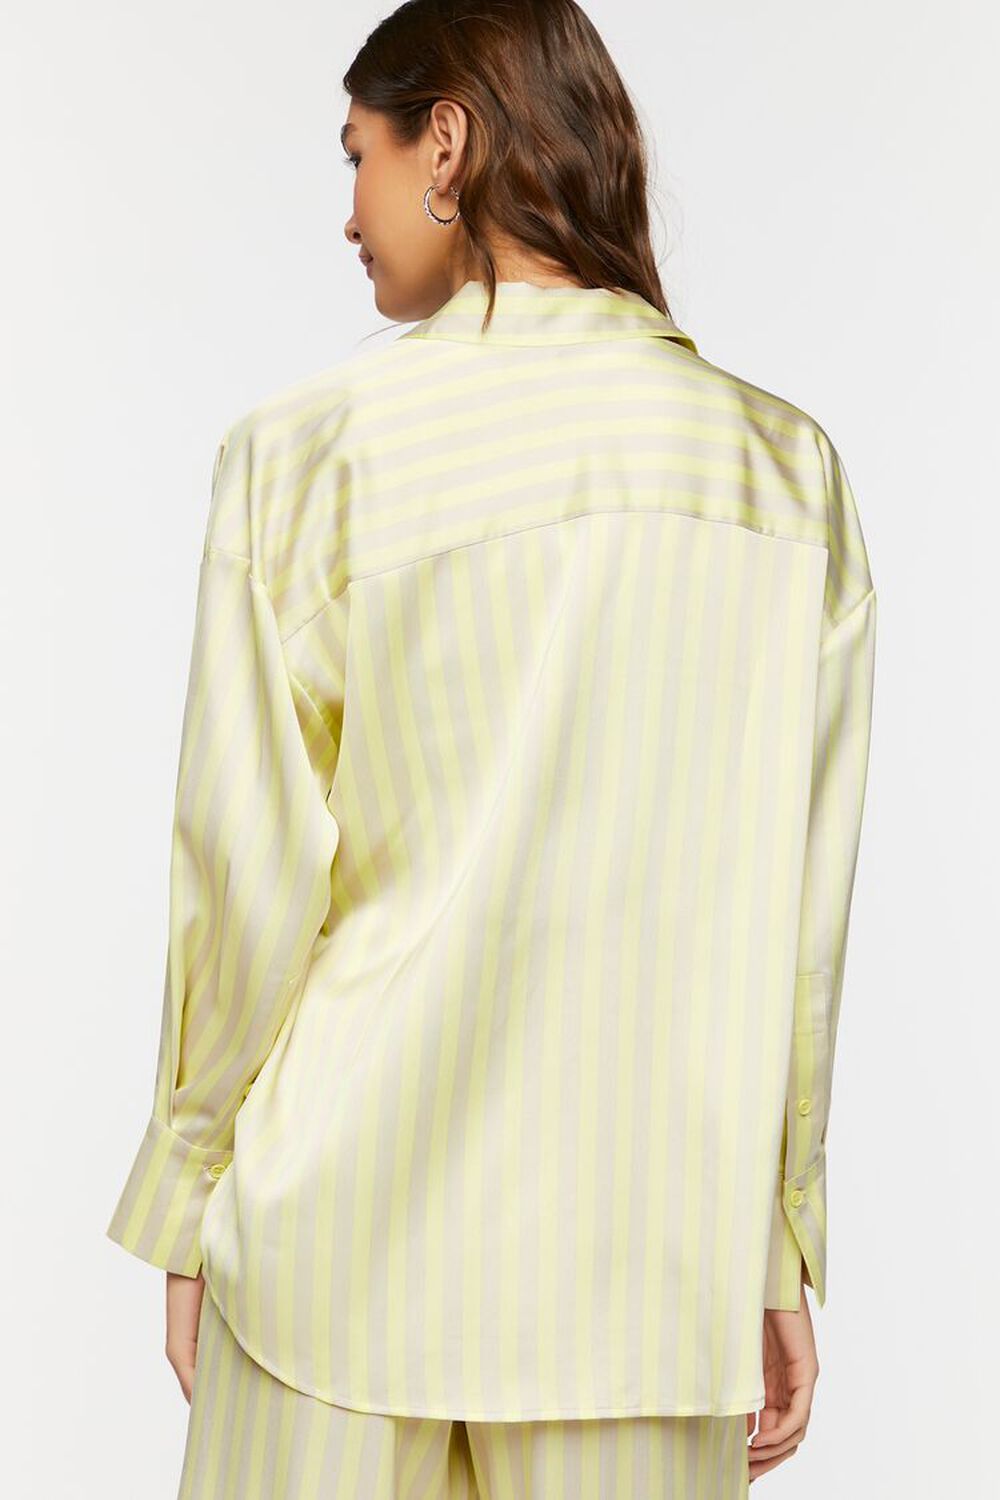 Oversized Satin Striped Shirt, image 3